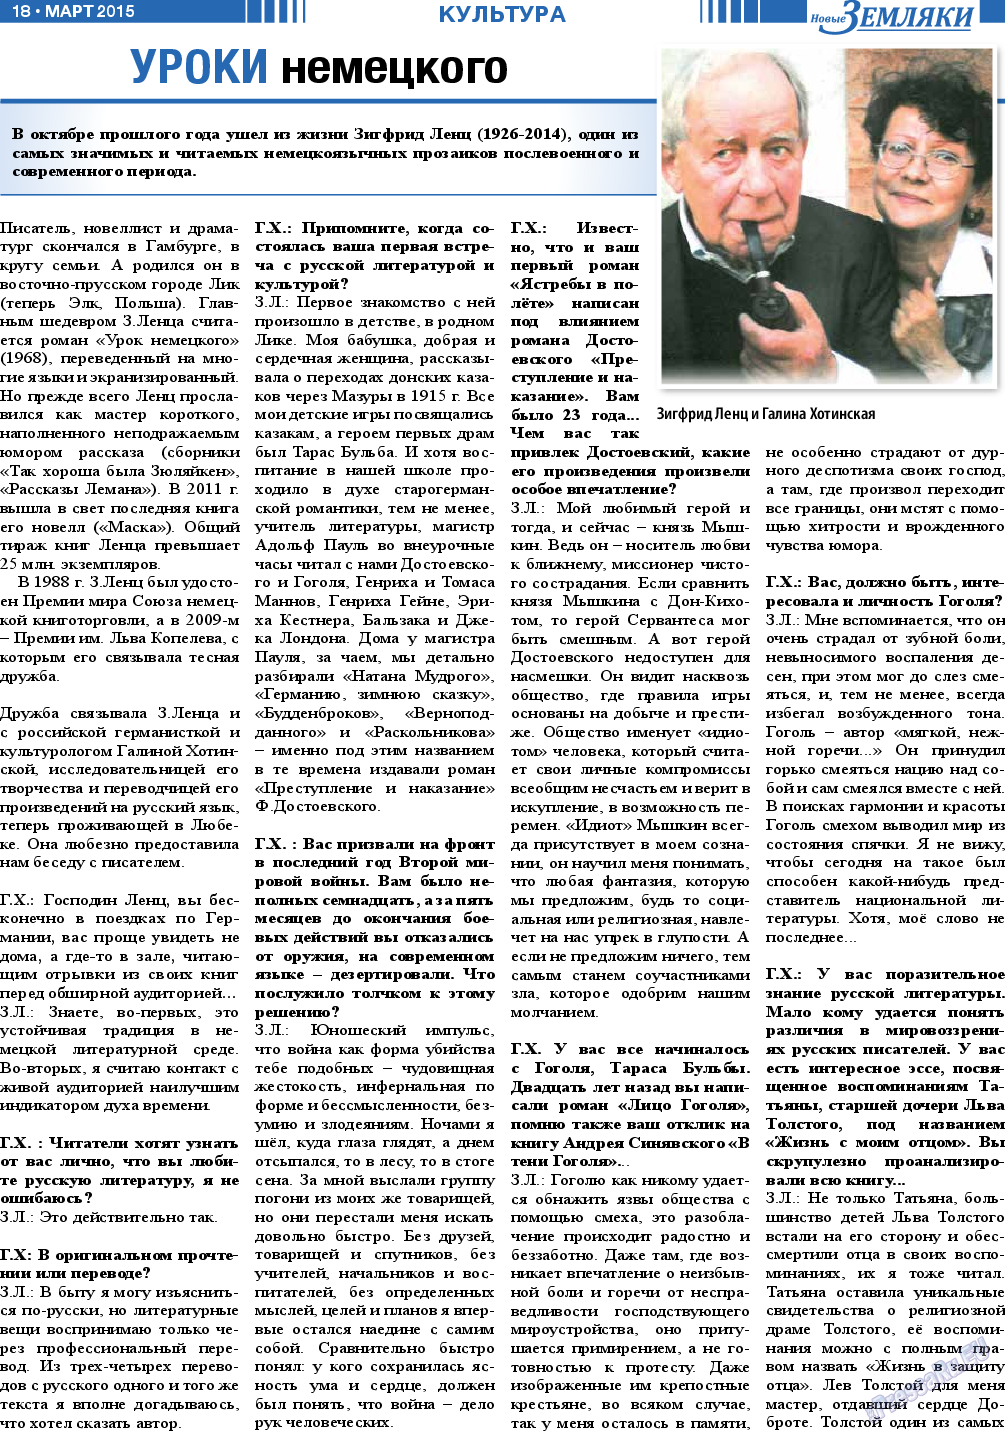 Новые Земляки (газета). 2015 год, номер 3, стр. 18